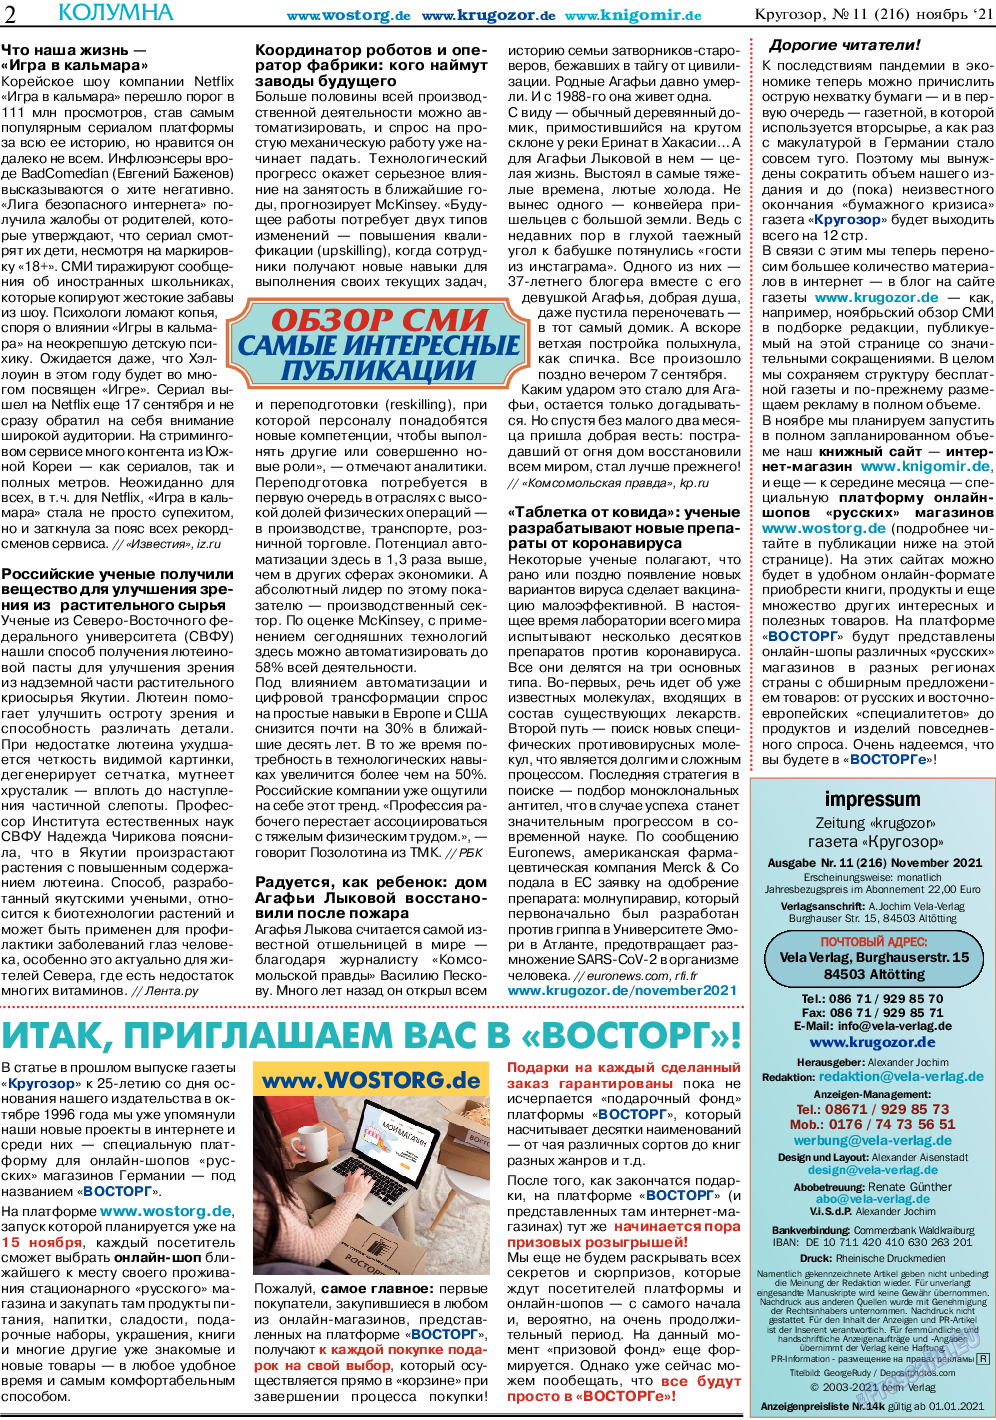 Кругозор, газета. 2021 №11 стр.2